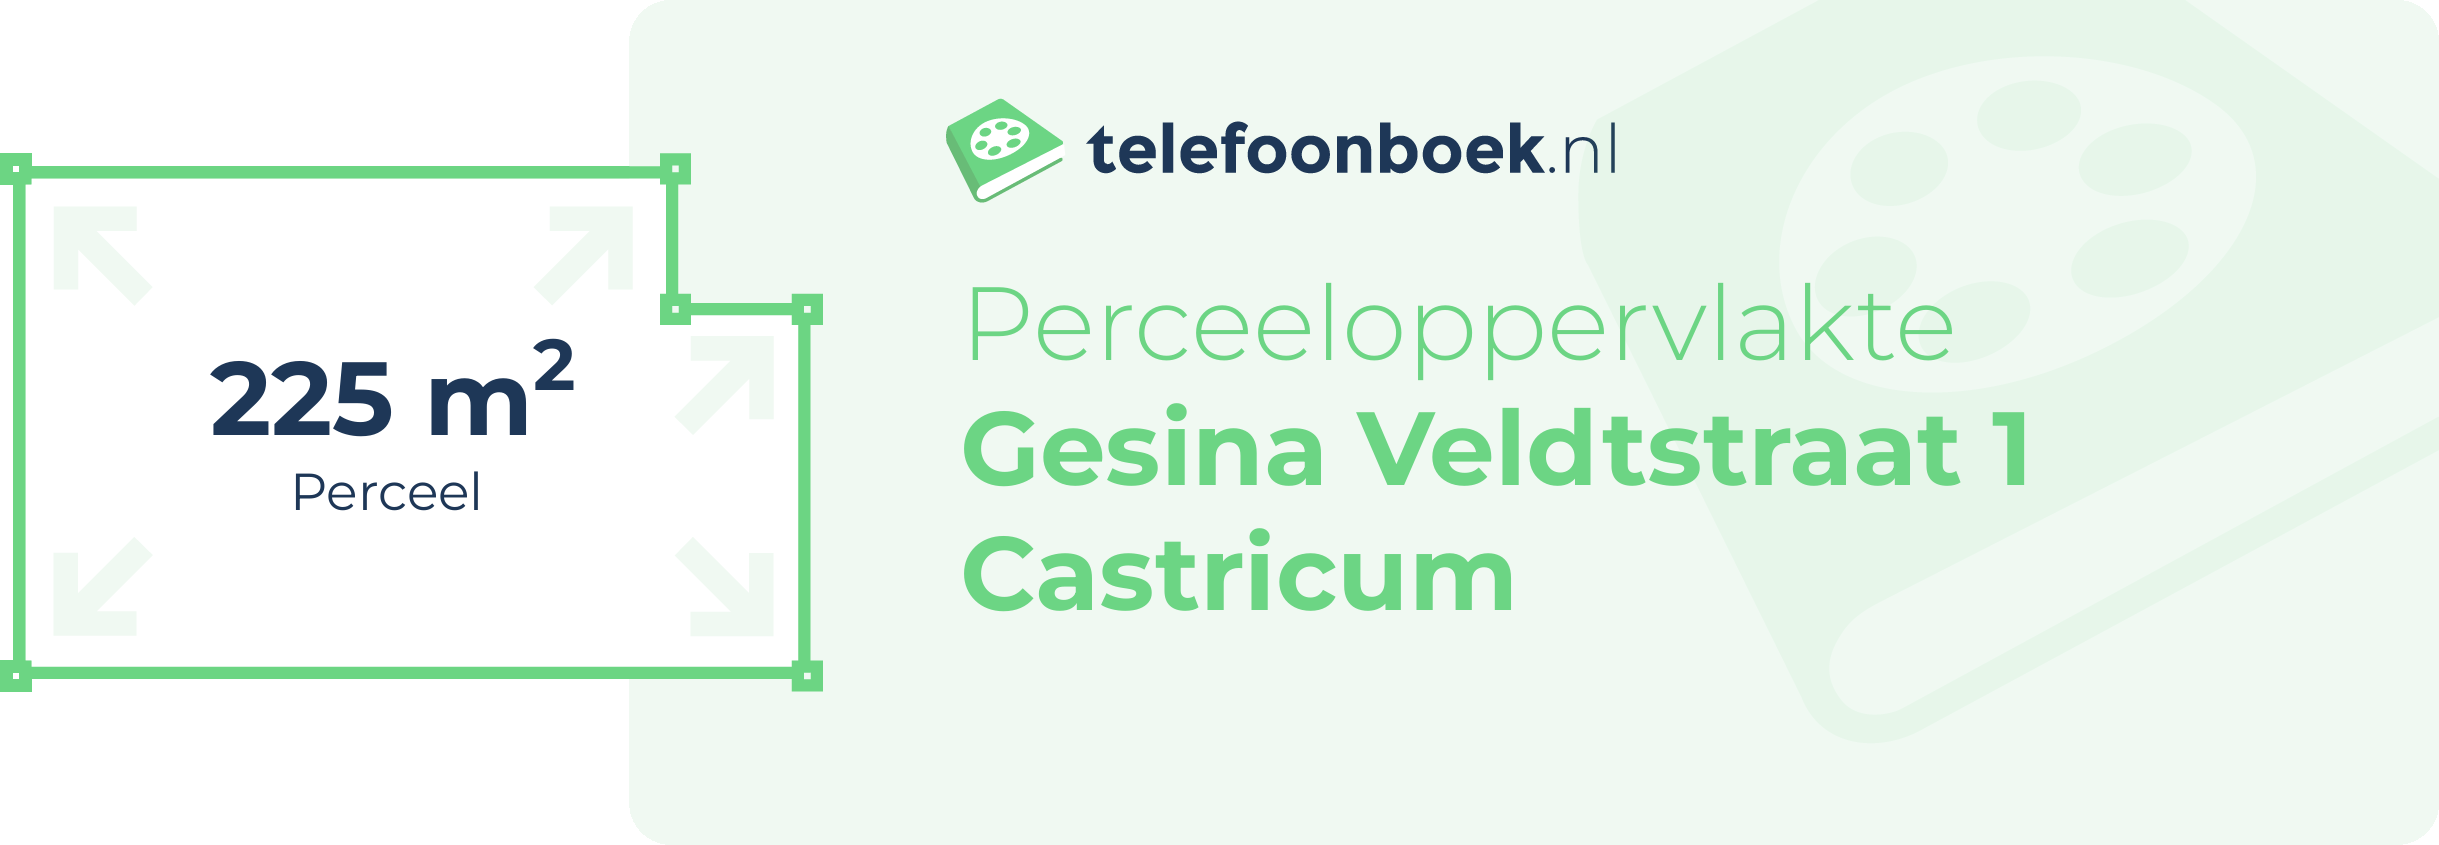 Perceeloppervlakte Gesina Veldtstraat 1 Castricum